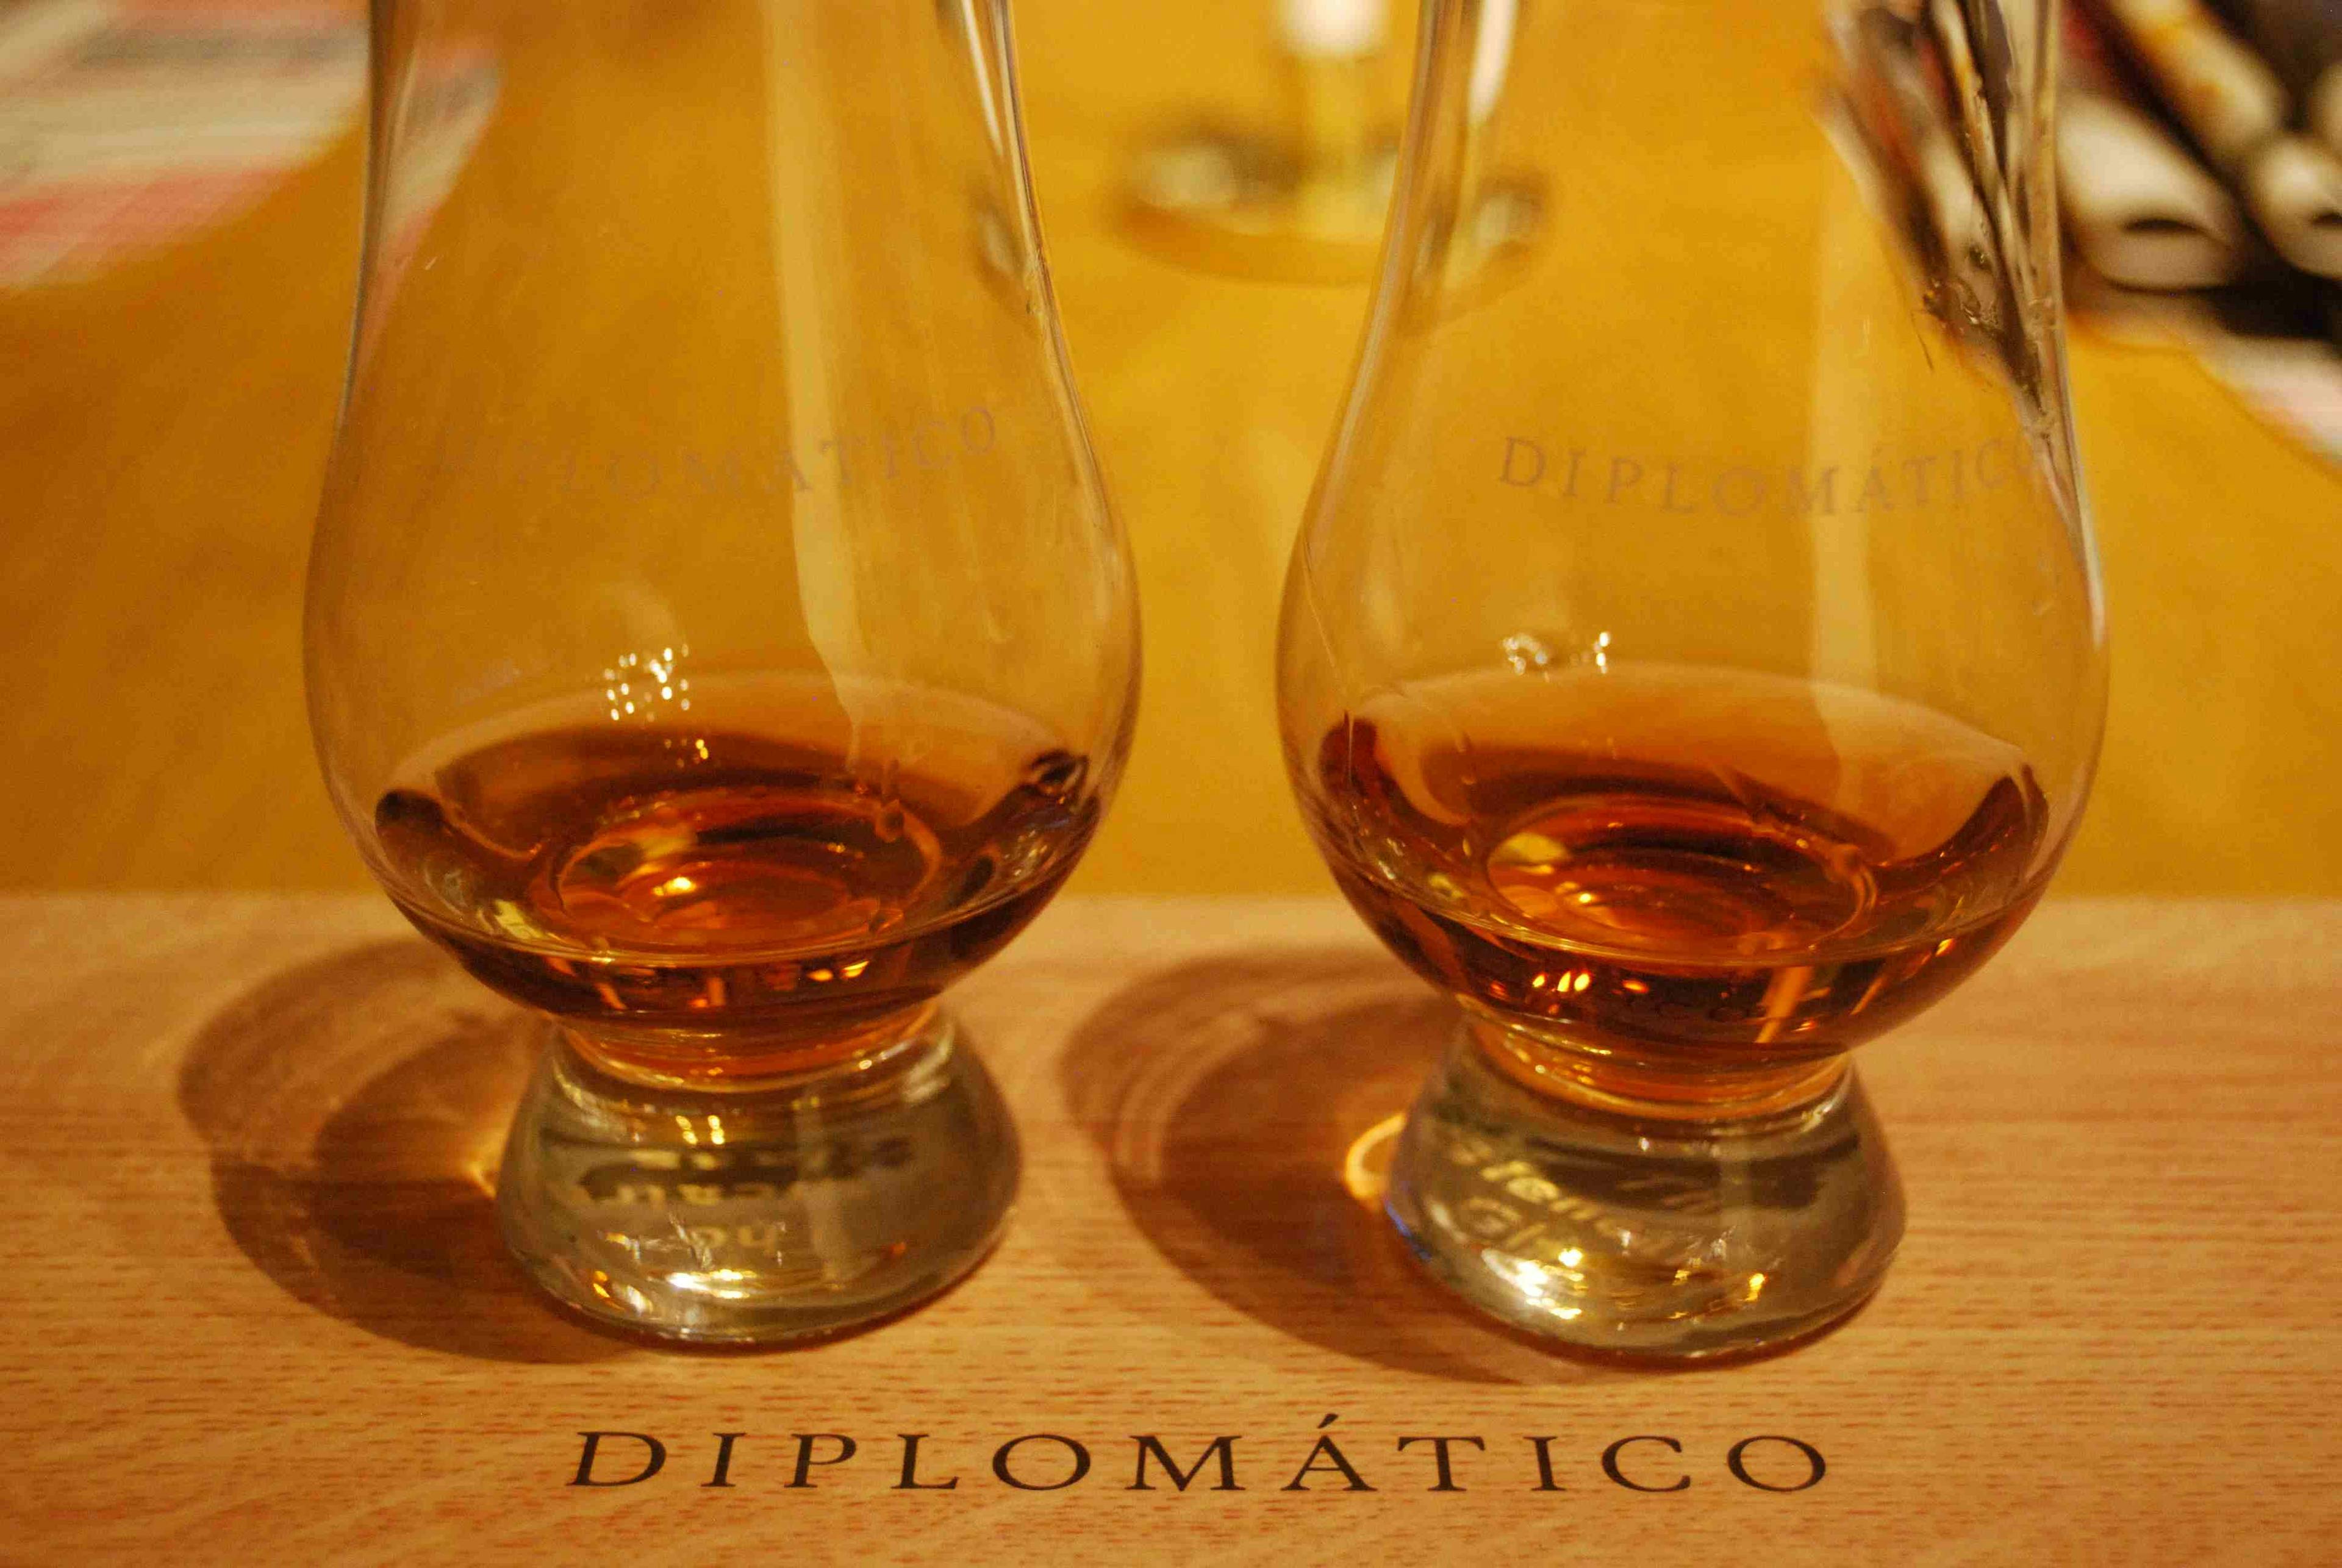 Diplomático Distillery Collection